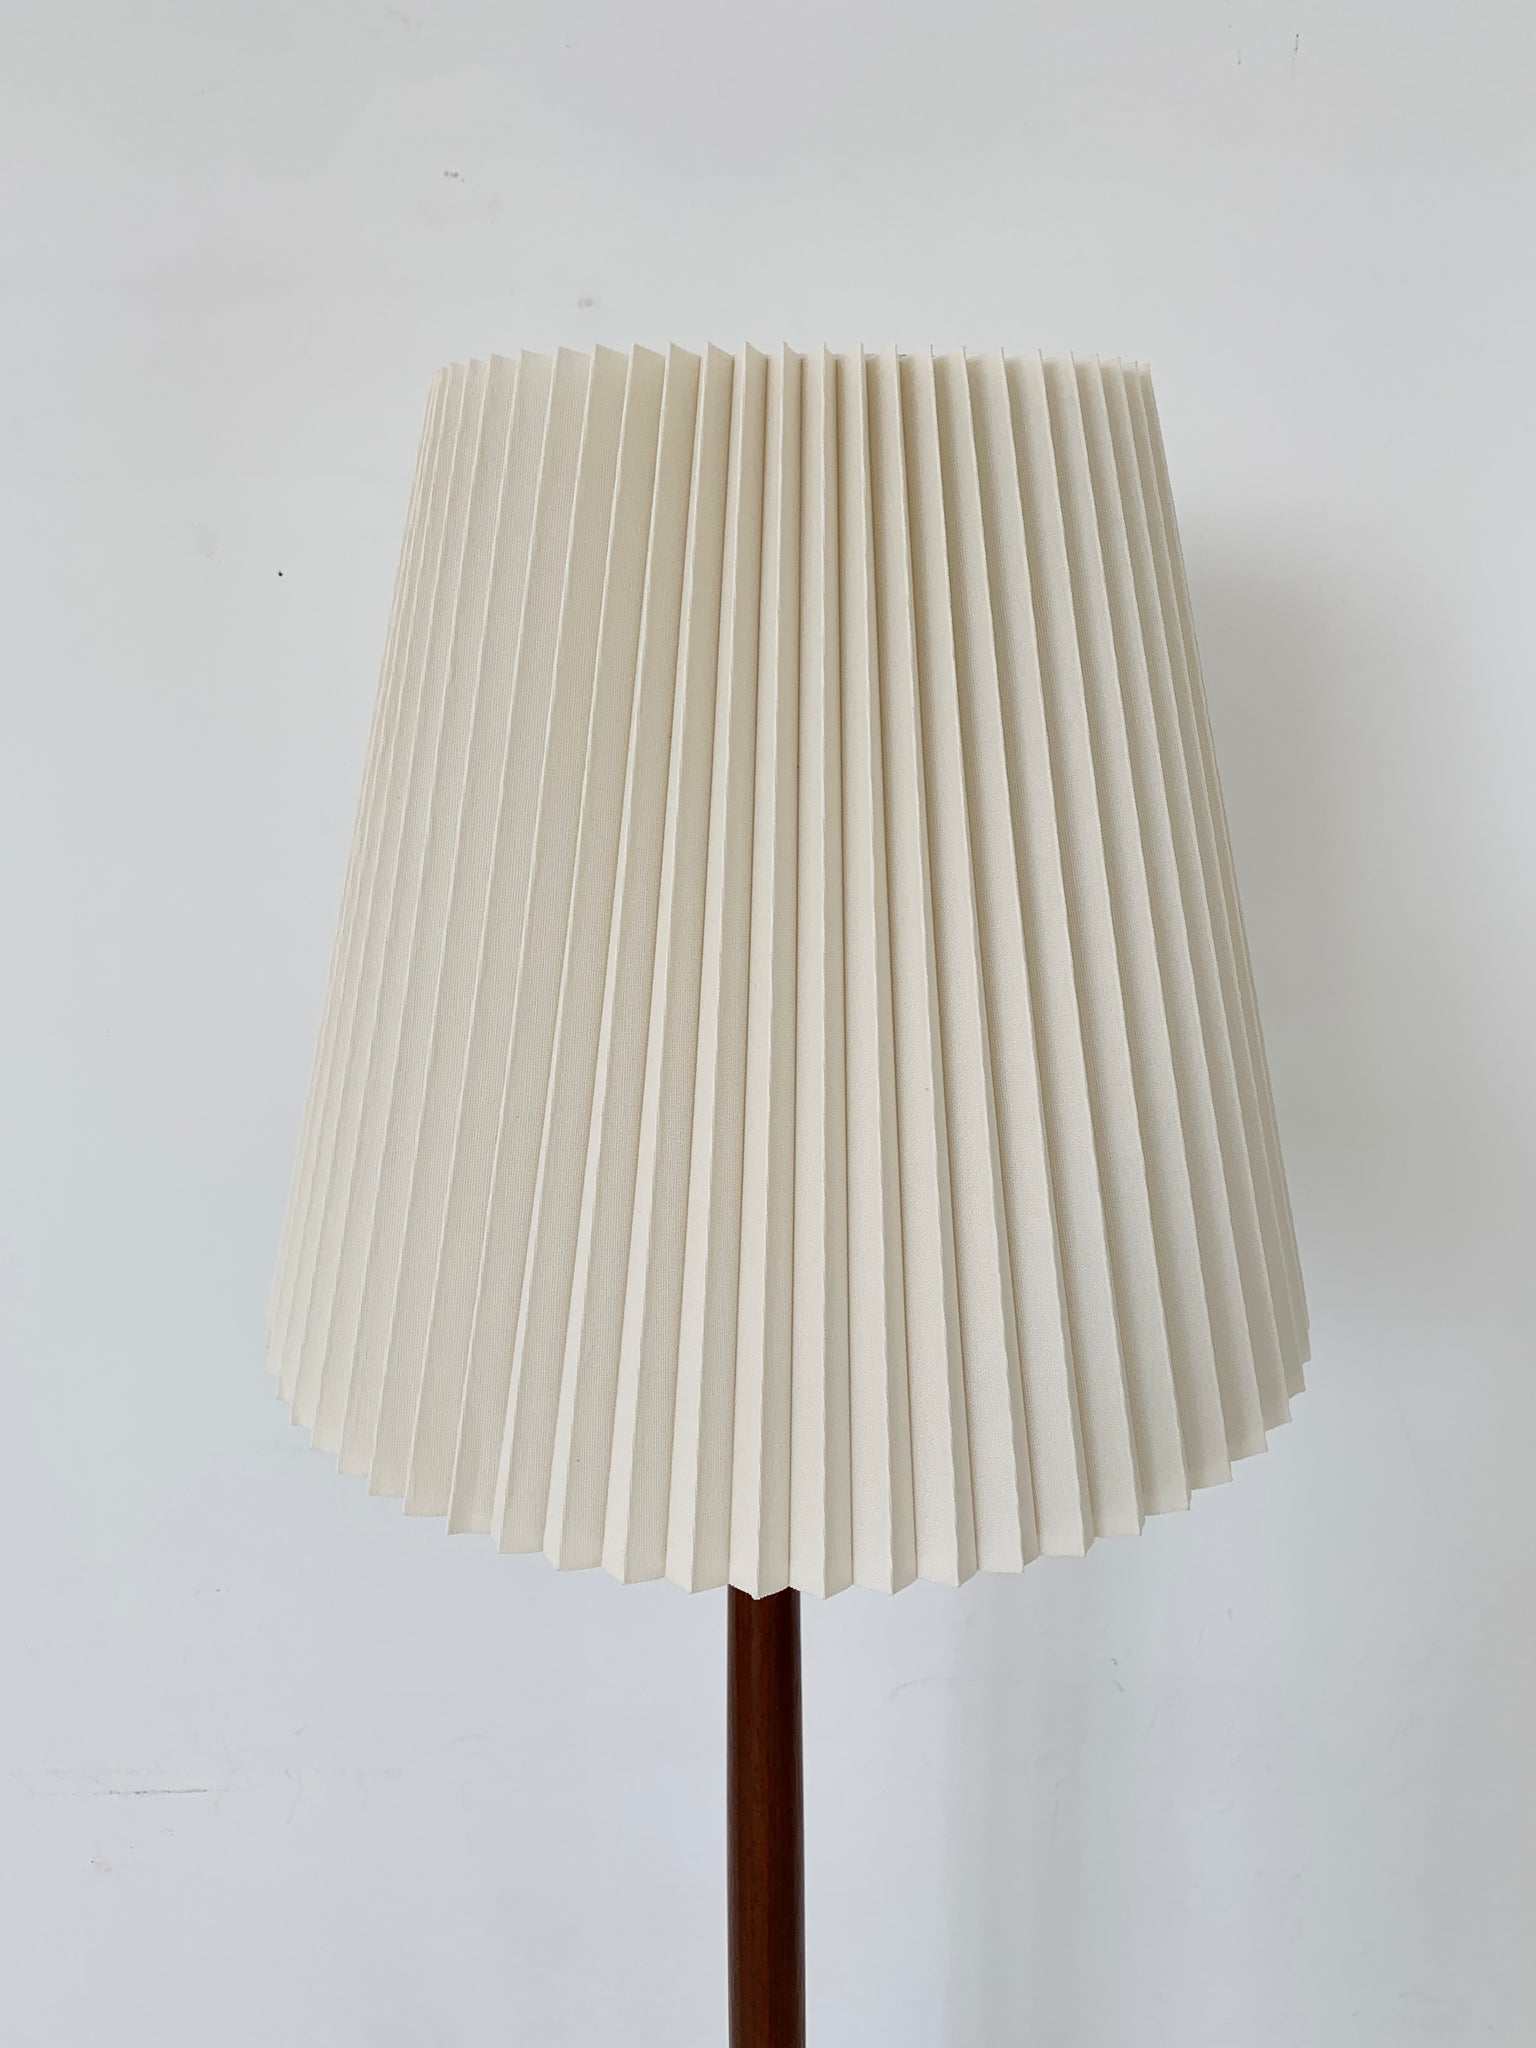 1960s Solid Teak Teardrop Floor Lamp